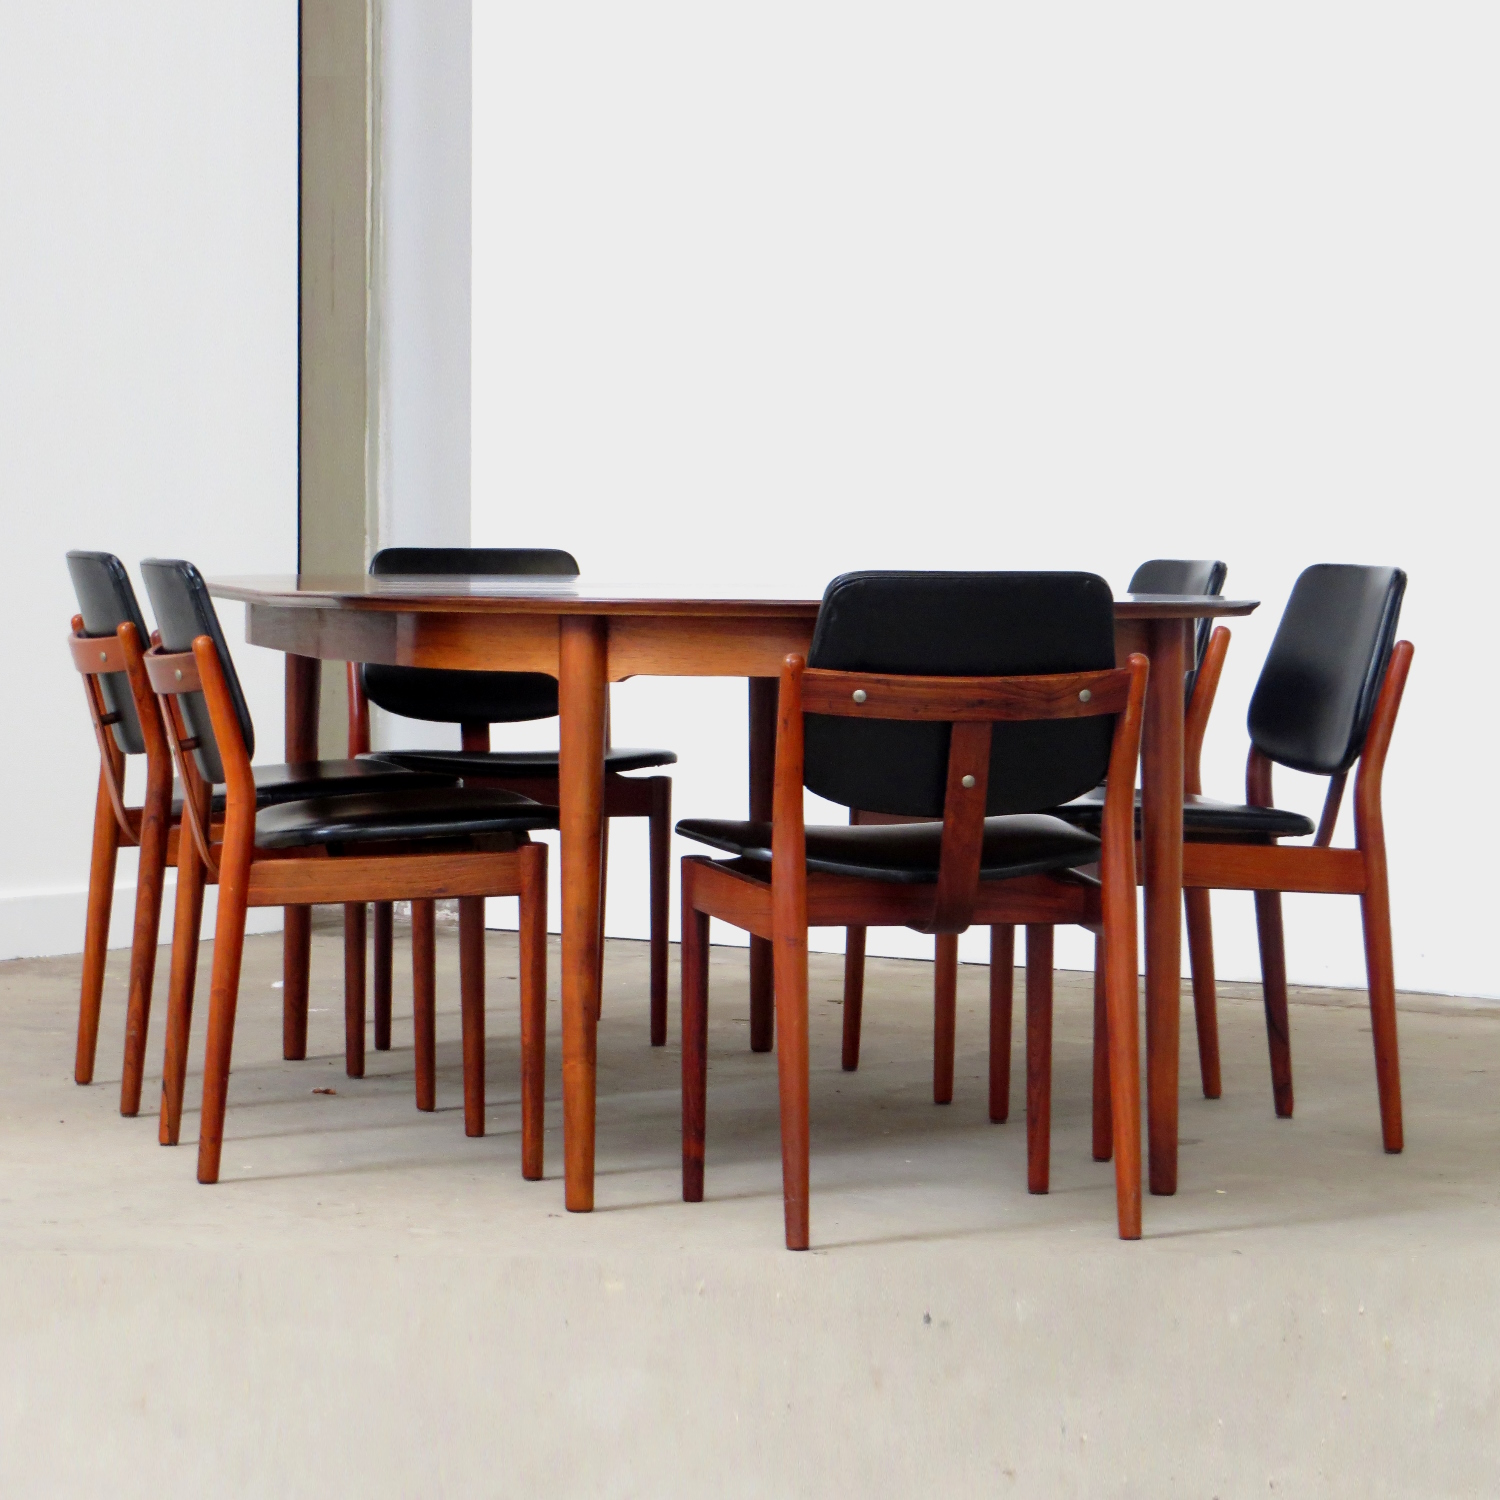 Foto van de zijkant van de tafel en zes stoelen